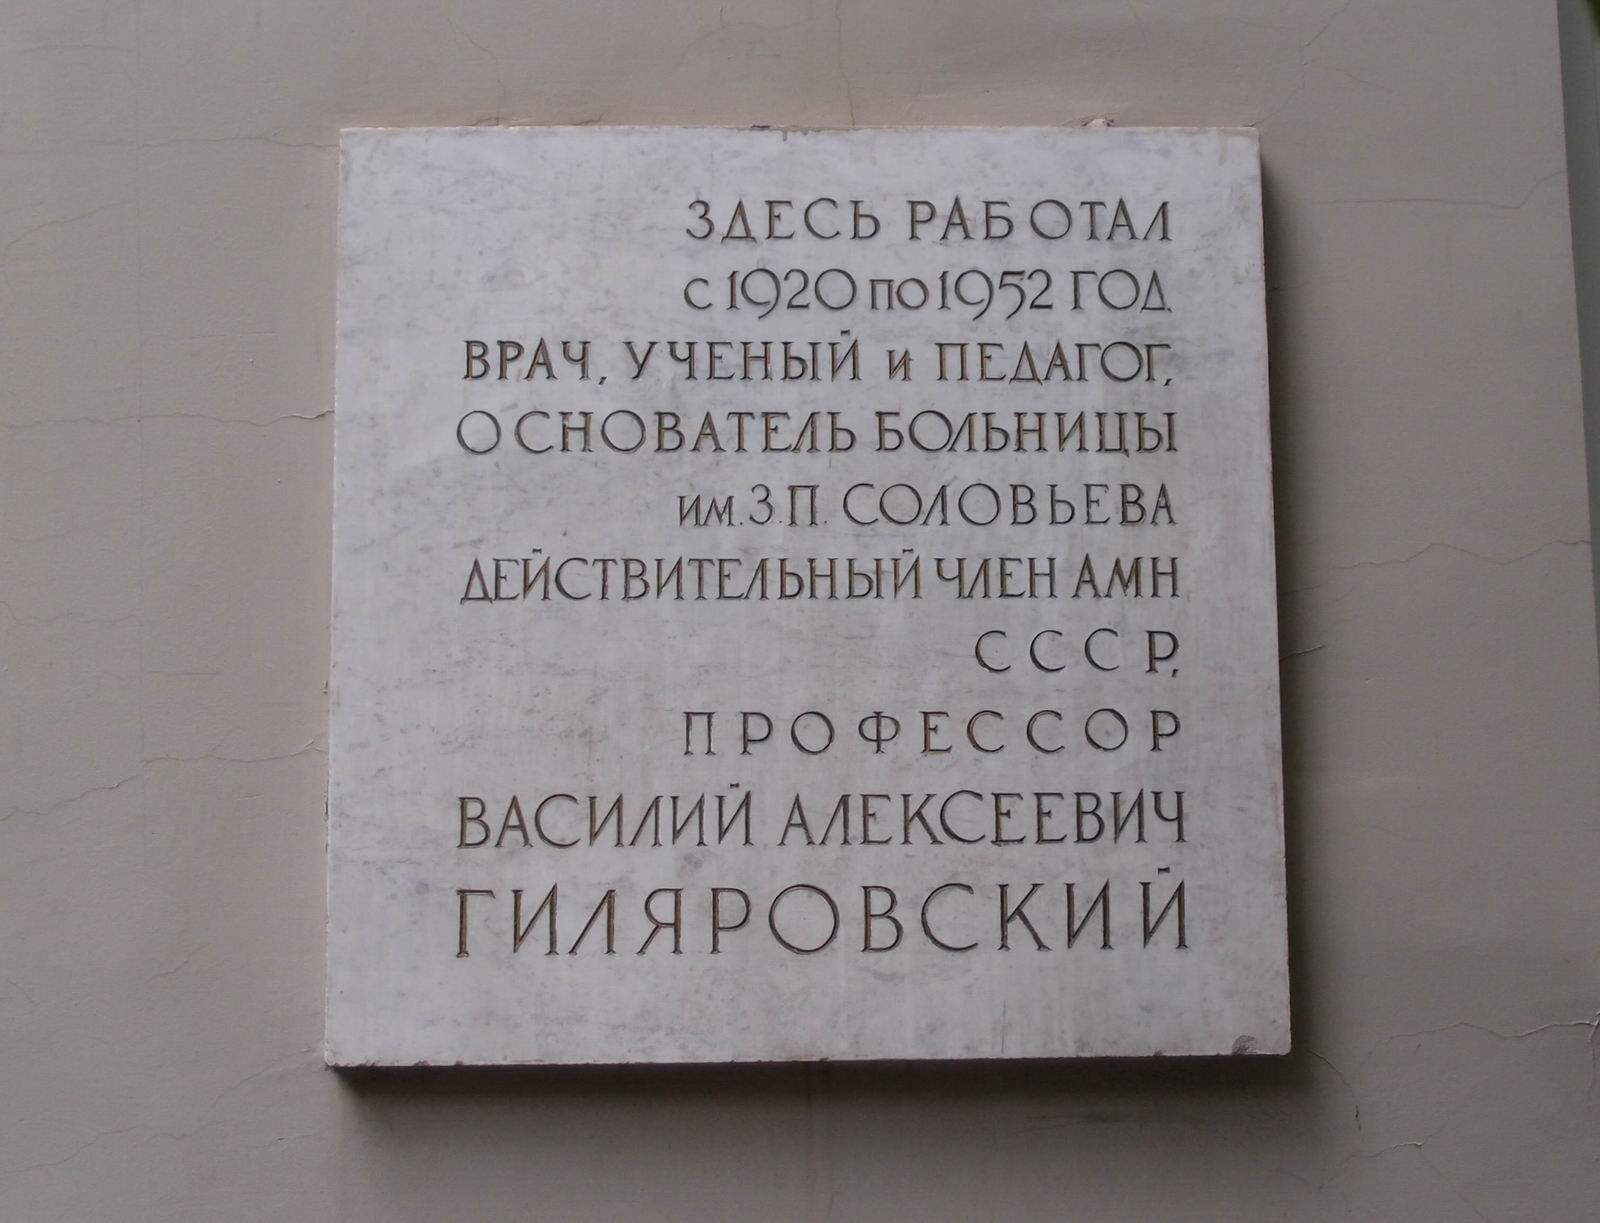 Мемориальная доска Гиляровскому В.А. (1875-1959), на Донской улице, дом 43.